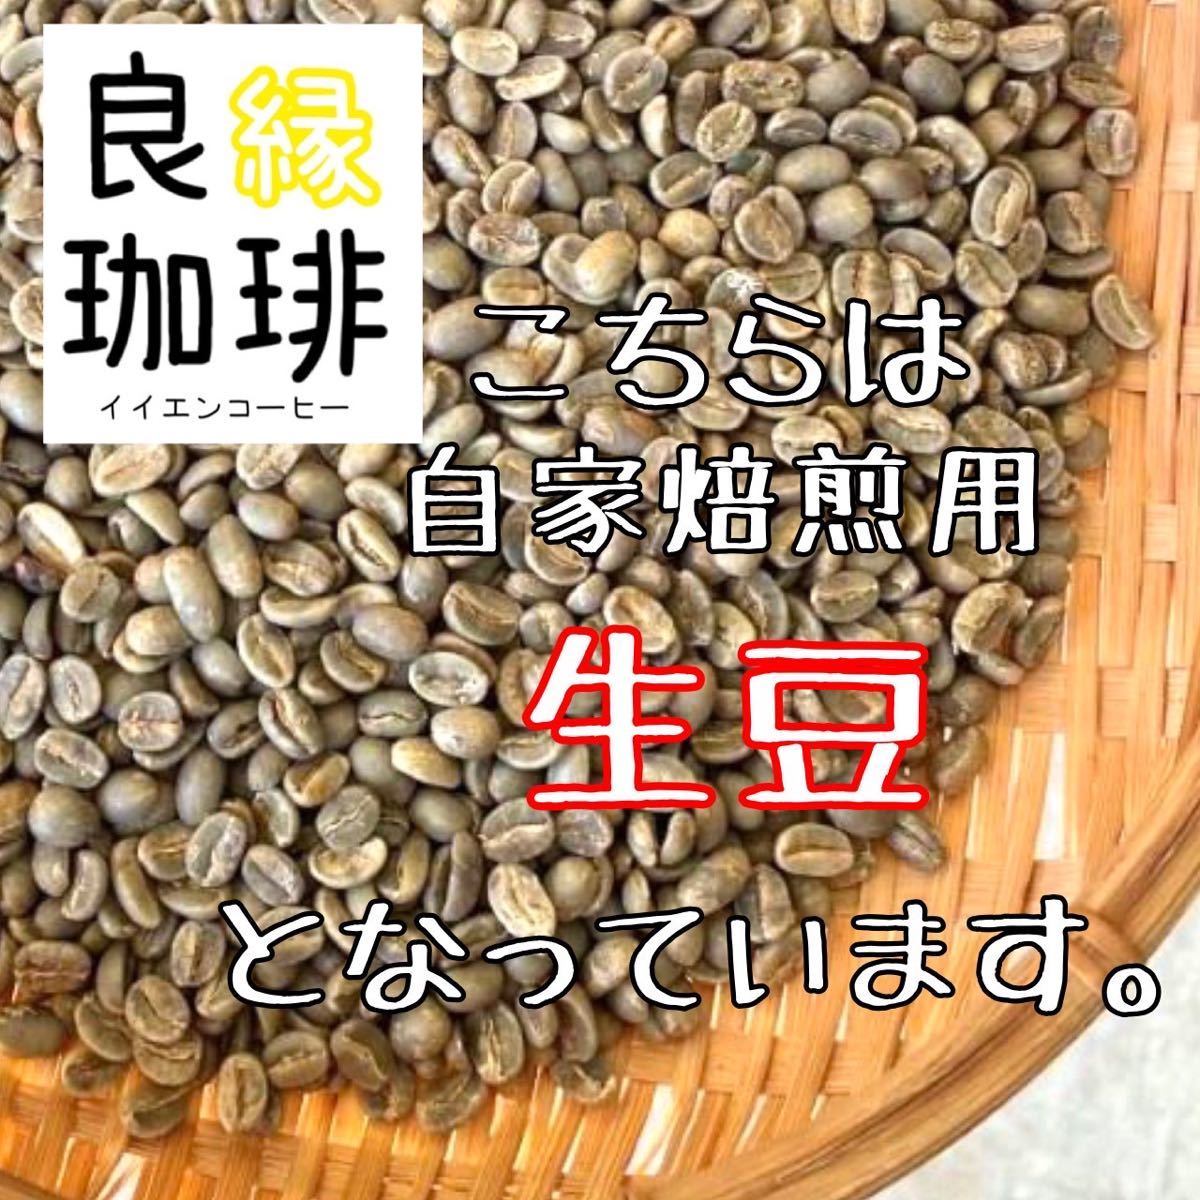 生豆 ブラジル クィーンショコラ Qグレード 800g コーヒー豆 珈琲豆